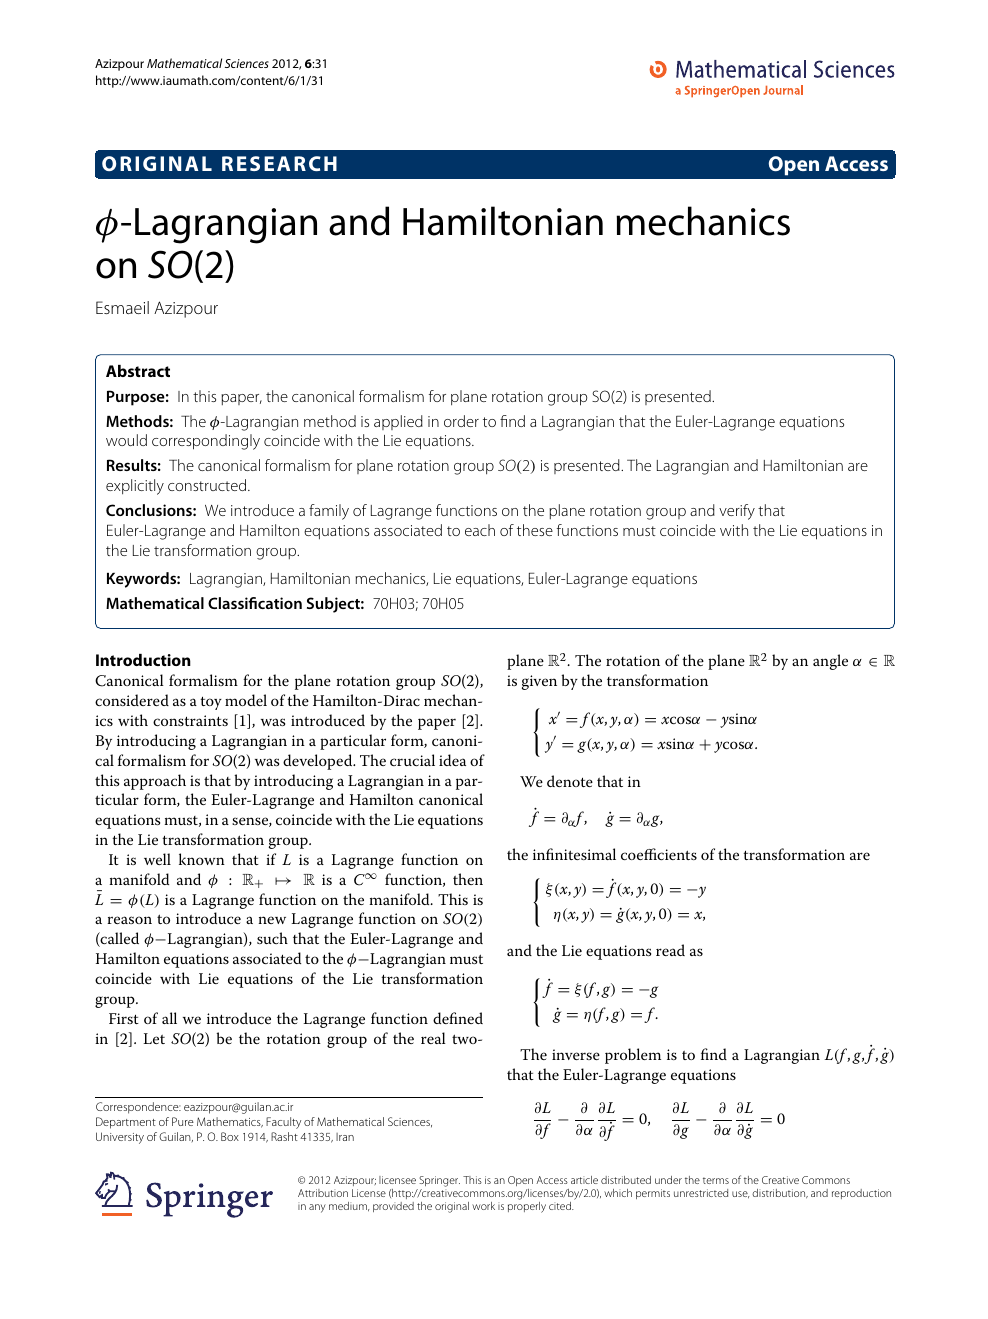 ϕ Lagrangian And Hamiltonian Mechanics On So 2 Topic Of Research Paper In Mathematics Download Scholarly Article Pdf And Read For Free On Cyberleninka Open Science Hub